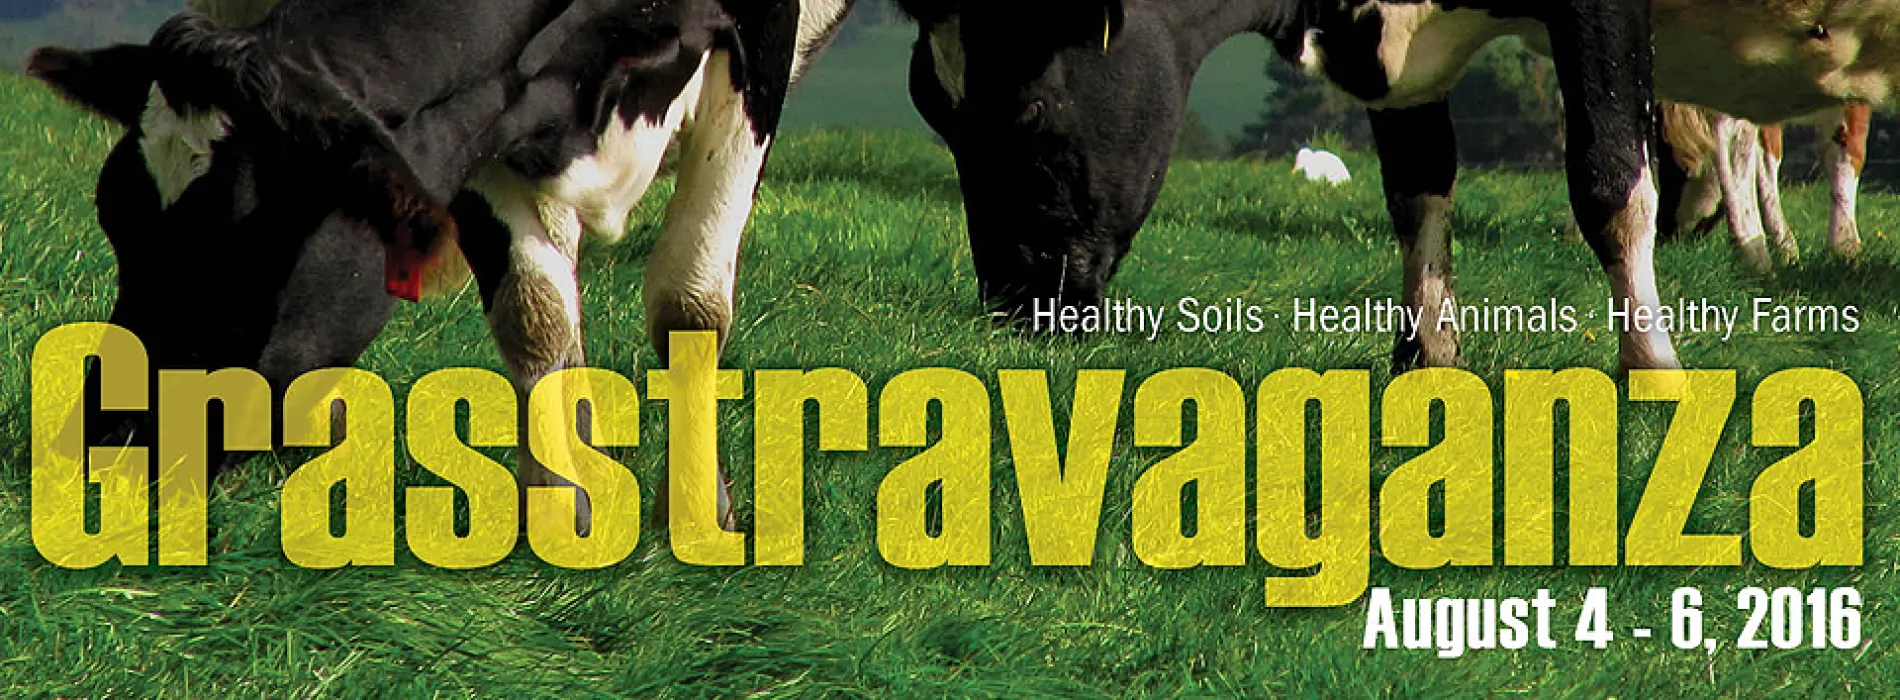 cows in field, Grasstravaganza Aug. 4-6, 2016